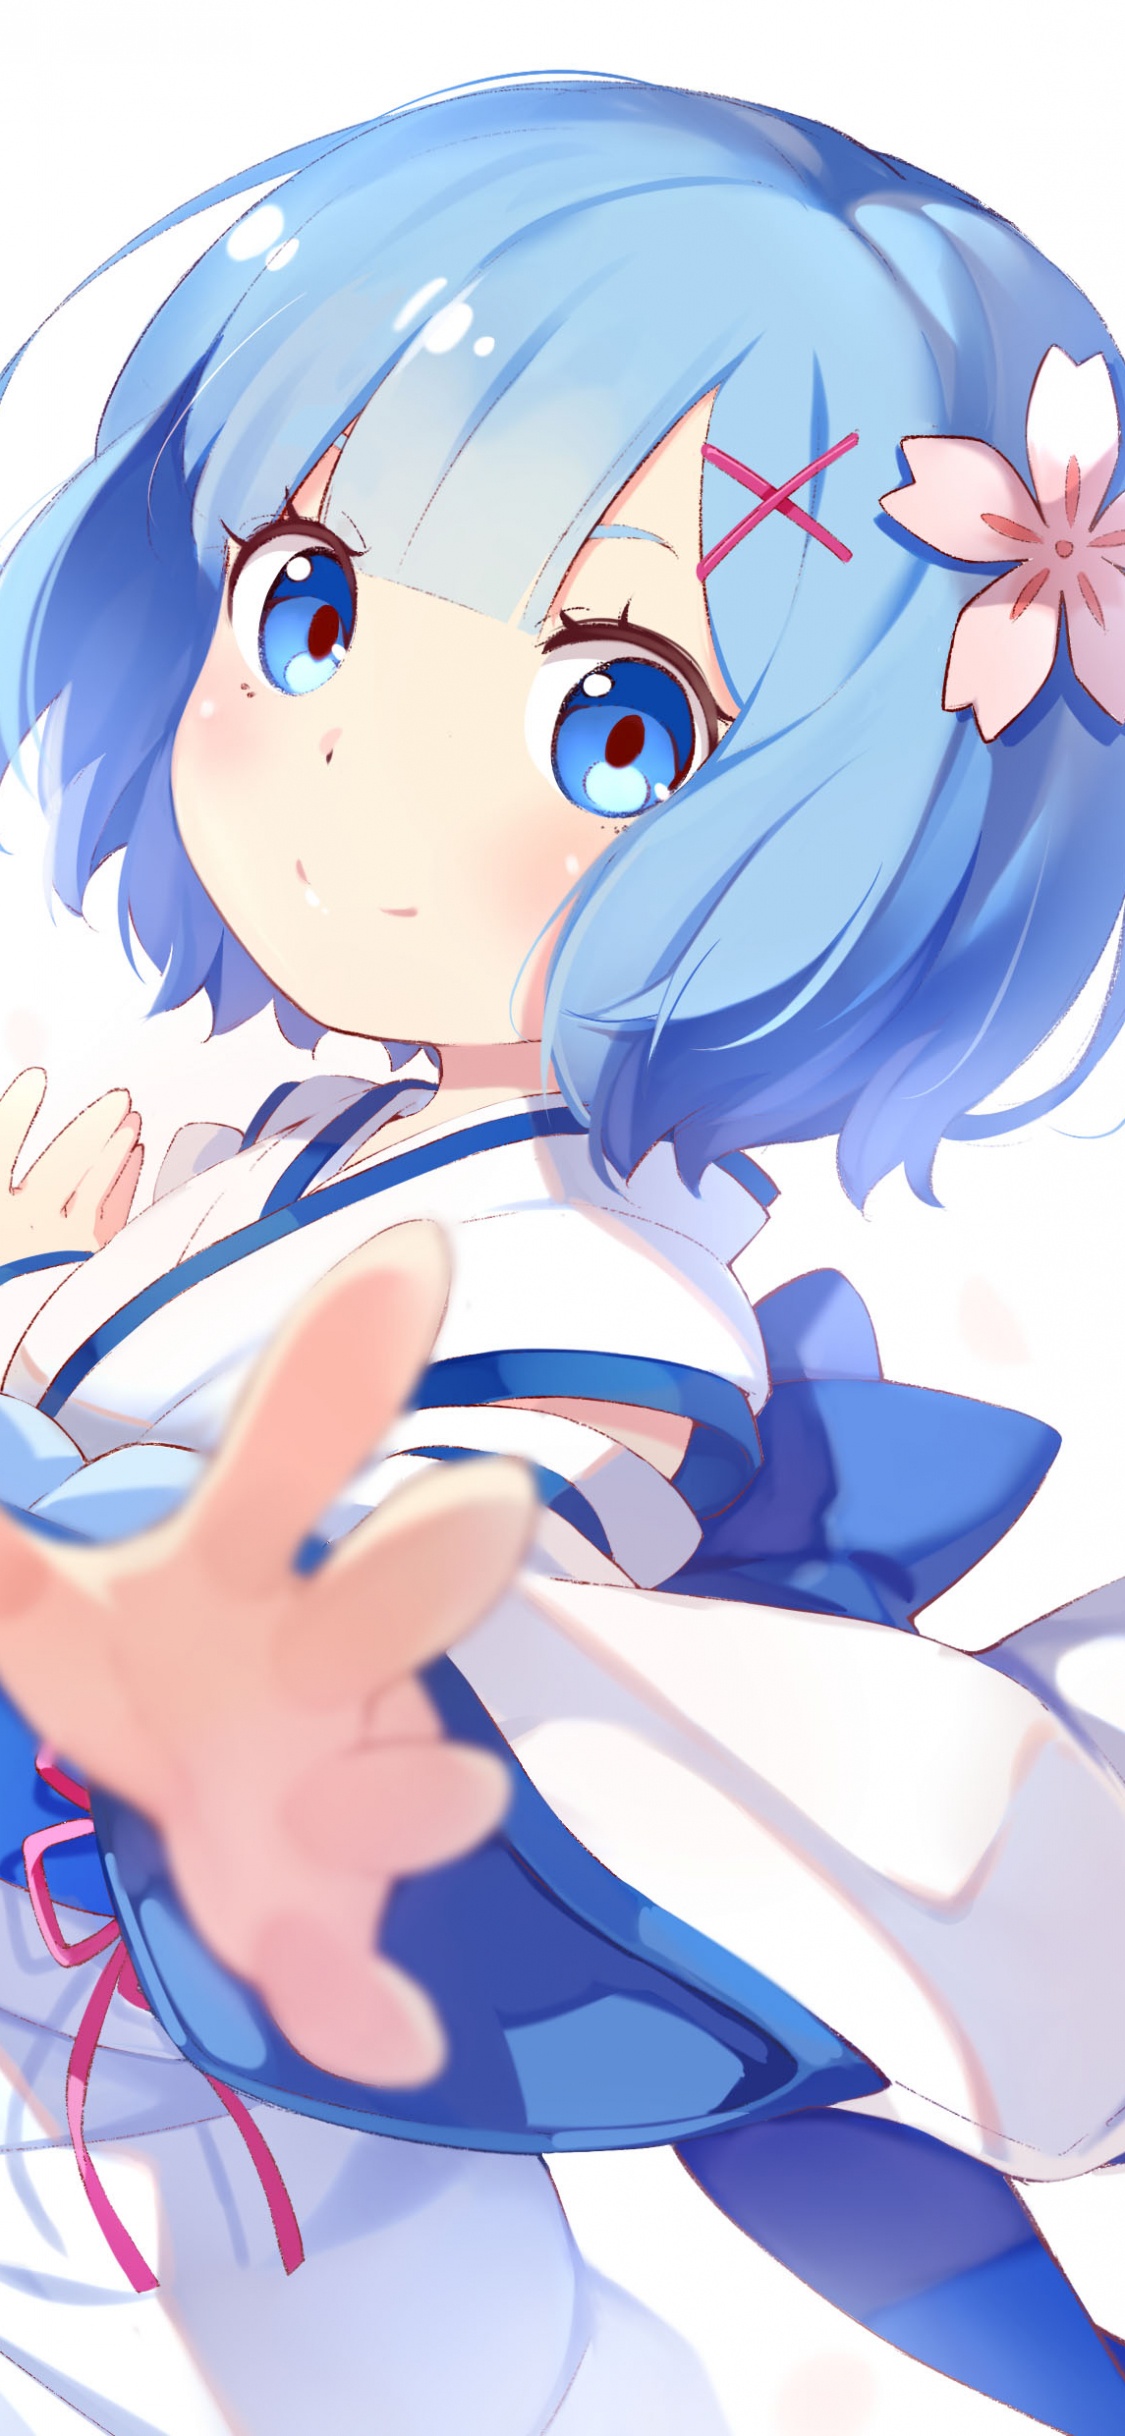 Chica en Vestido Azul Personaje de Anime. Wallpaper in 1125x2436 Resolution